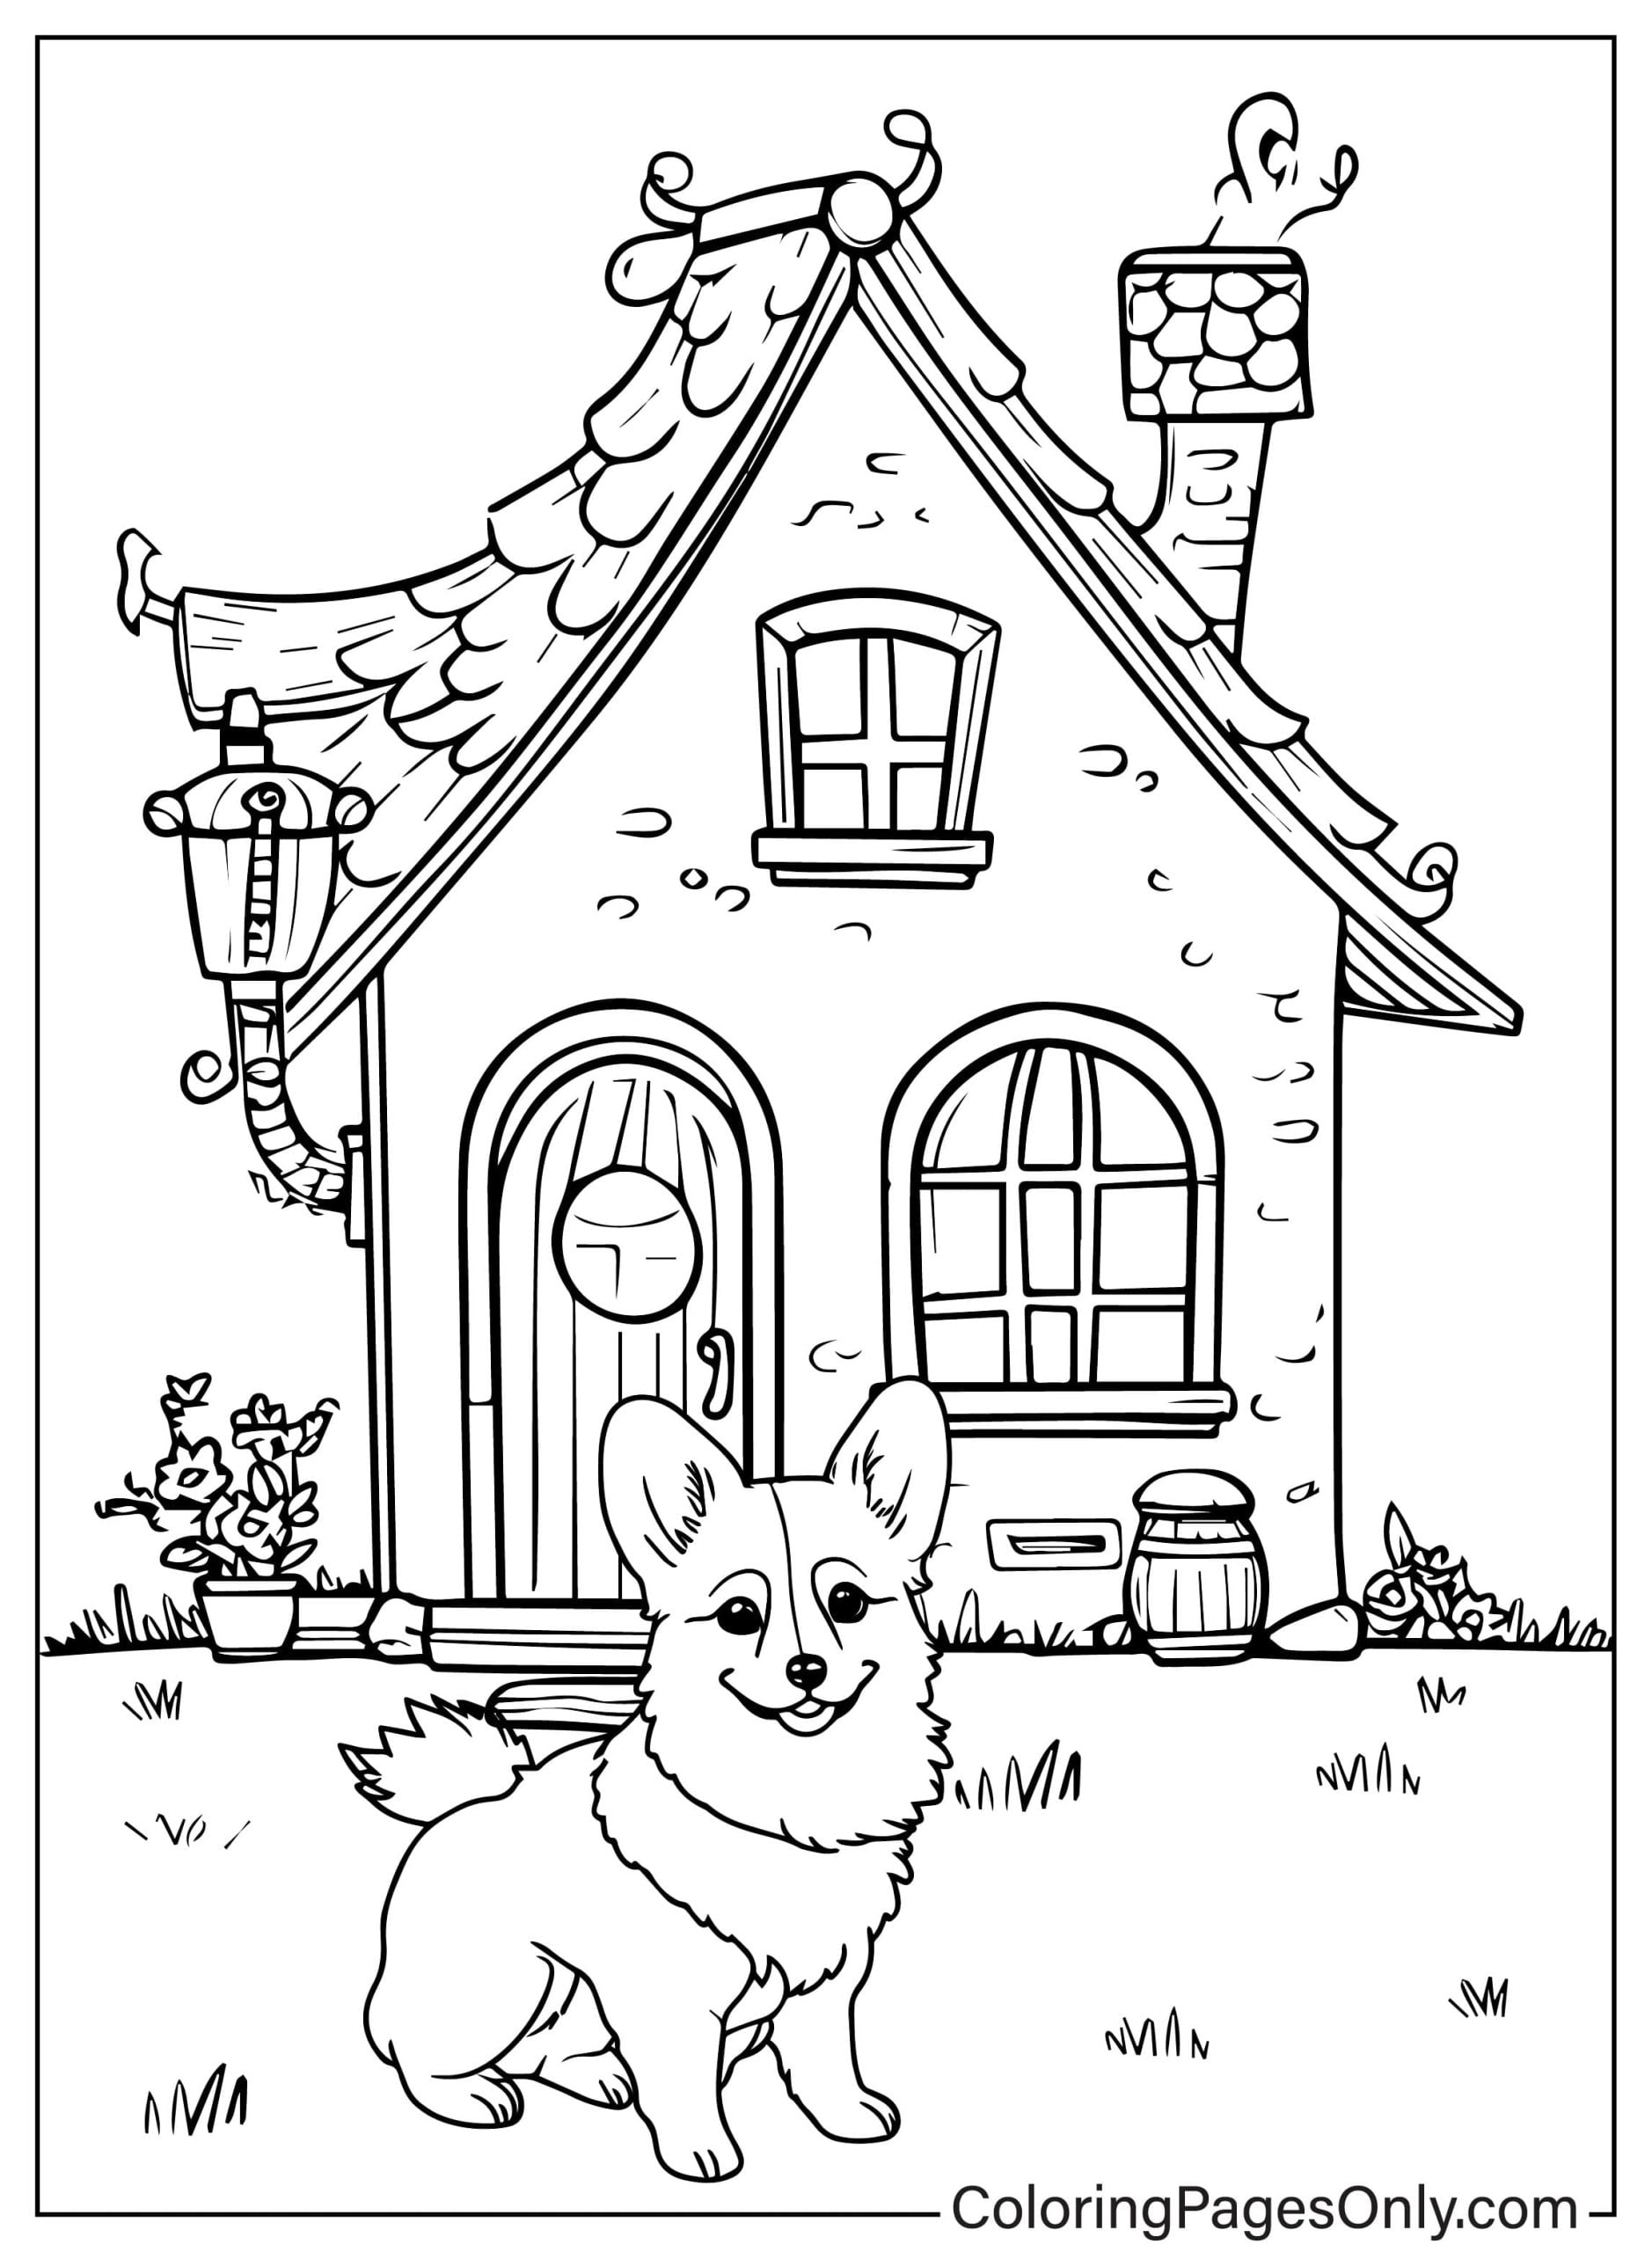 Der kleine Corgi-Hund sitzt glücklich da und bewacht das Haus vor Corgis